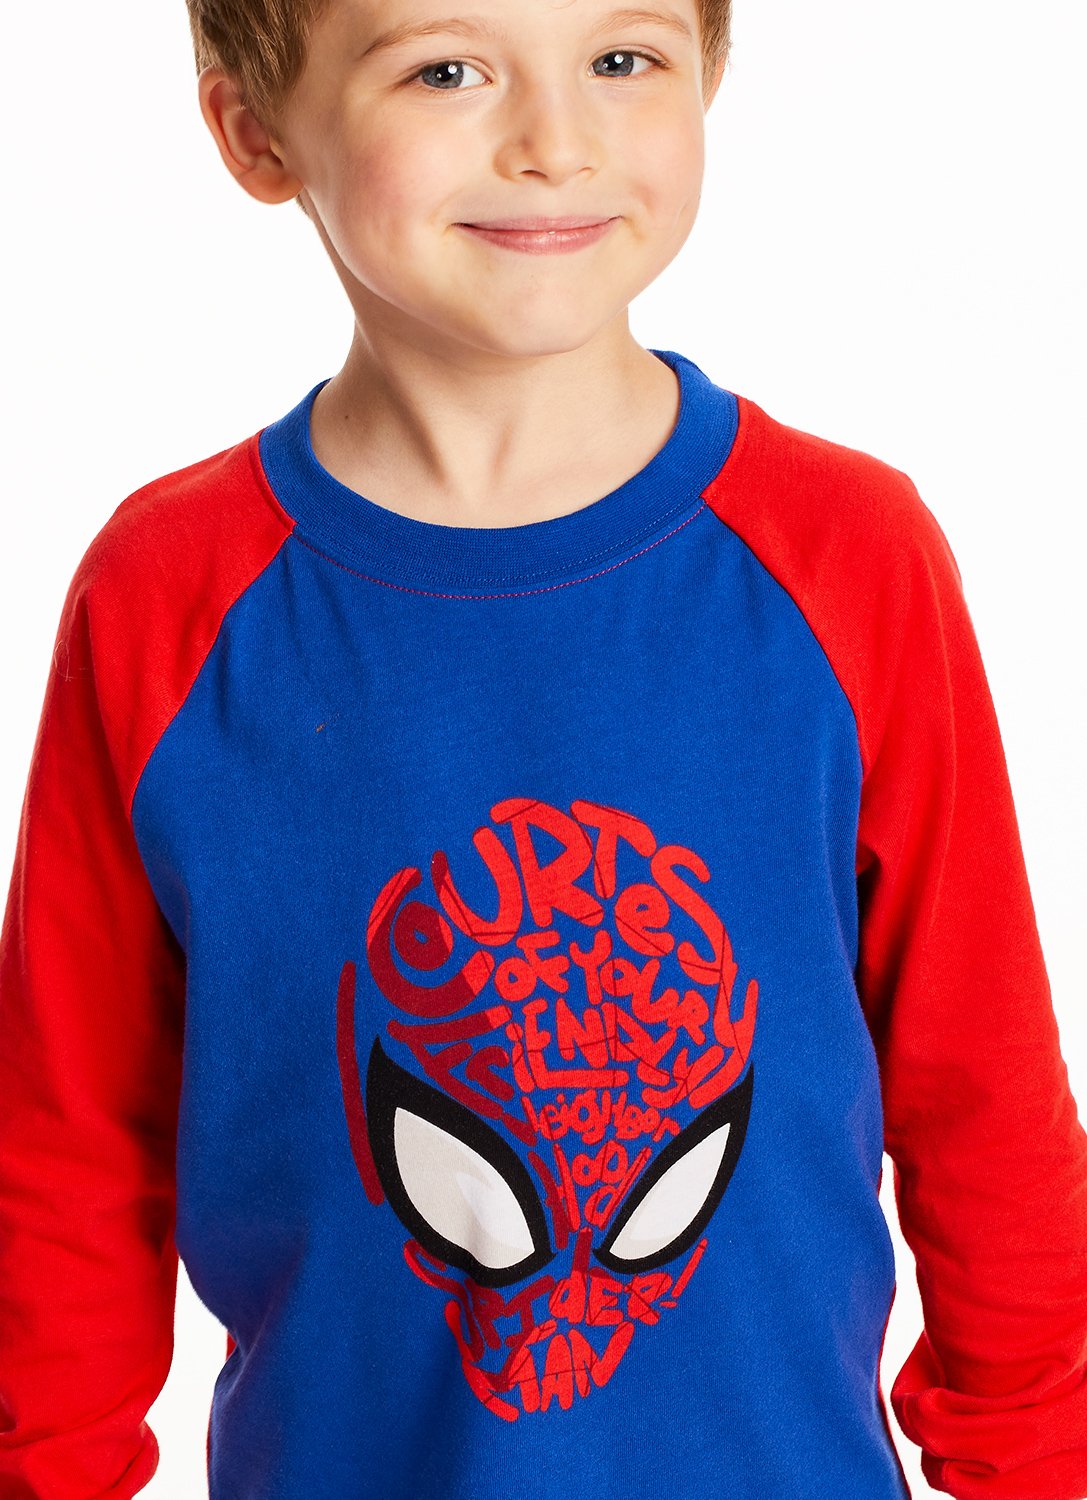 Detail Kid wearing Spider-Man Pajama 2 pieces